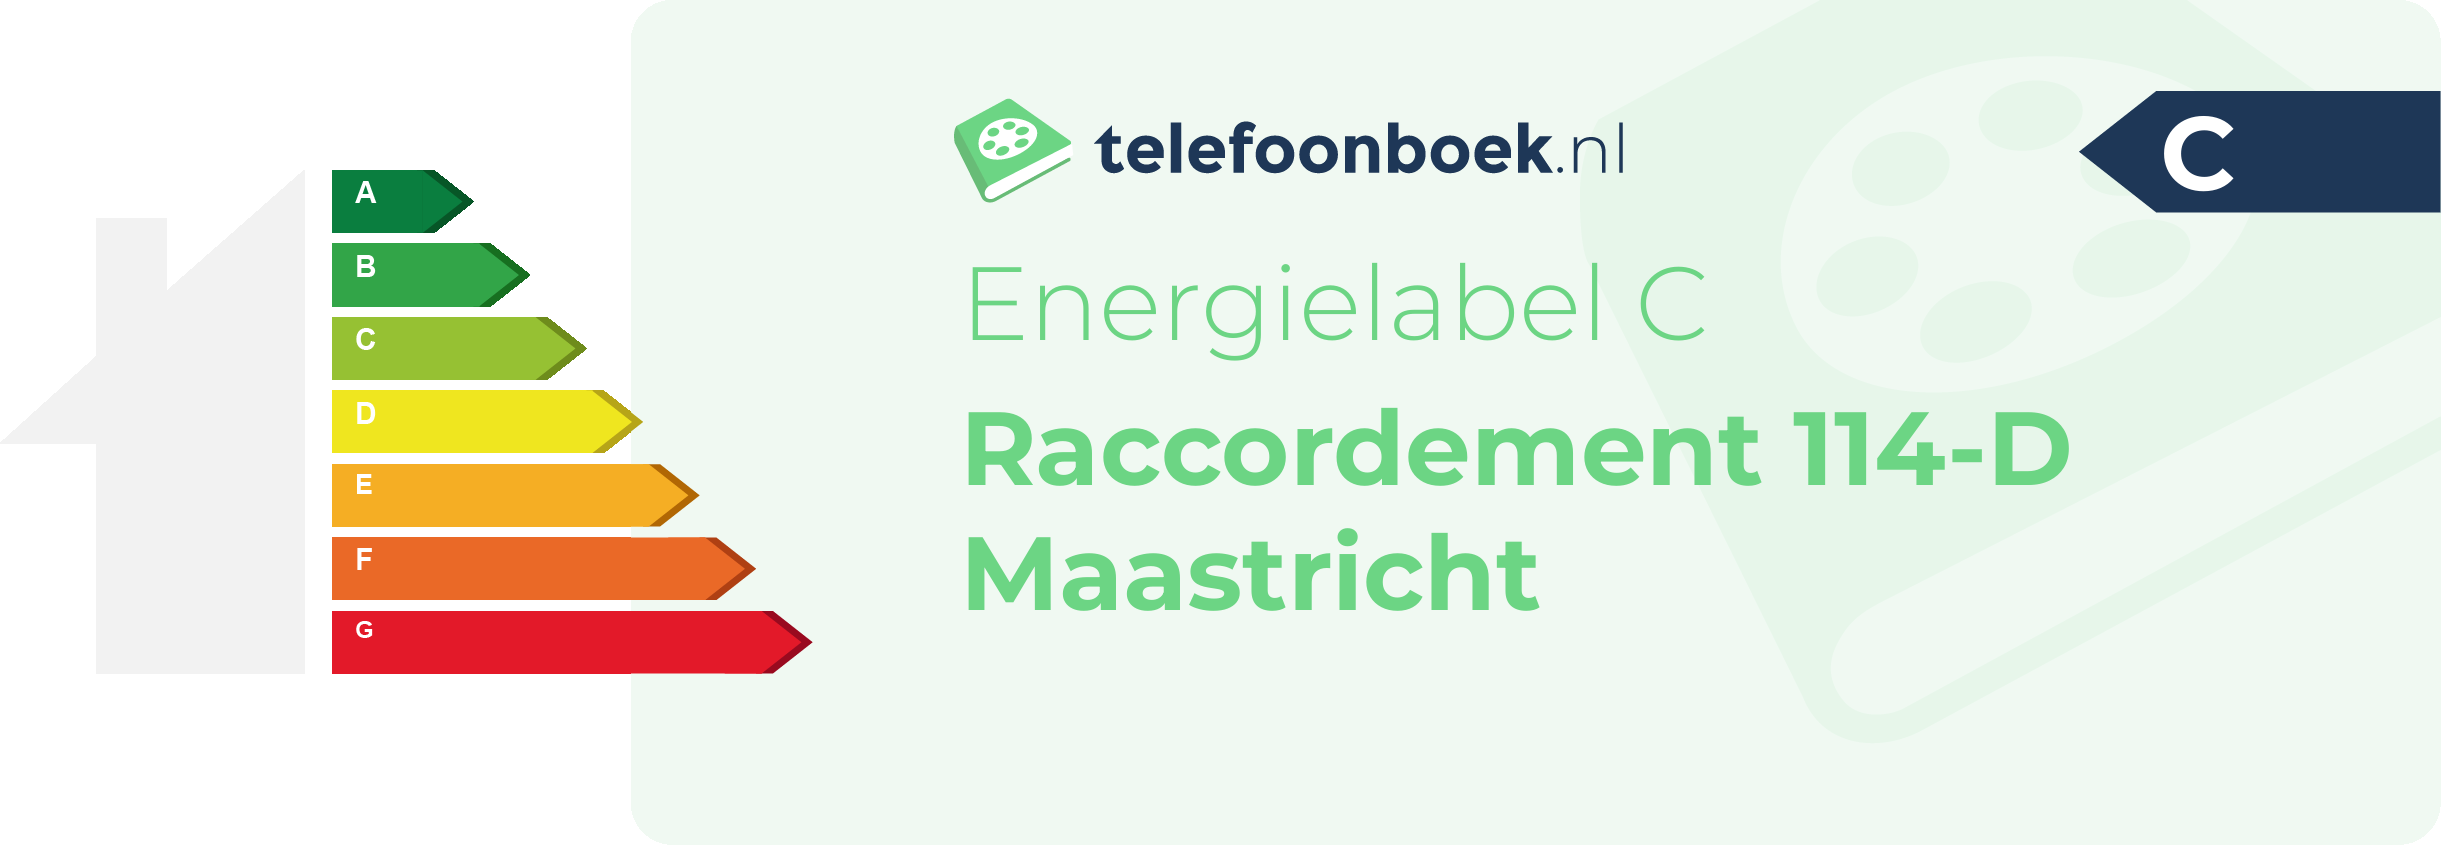 Energielabel Raccordement 114-D Maastricht